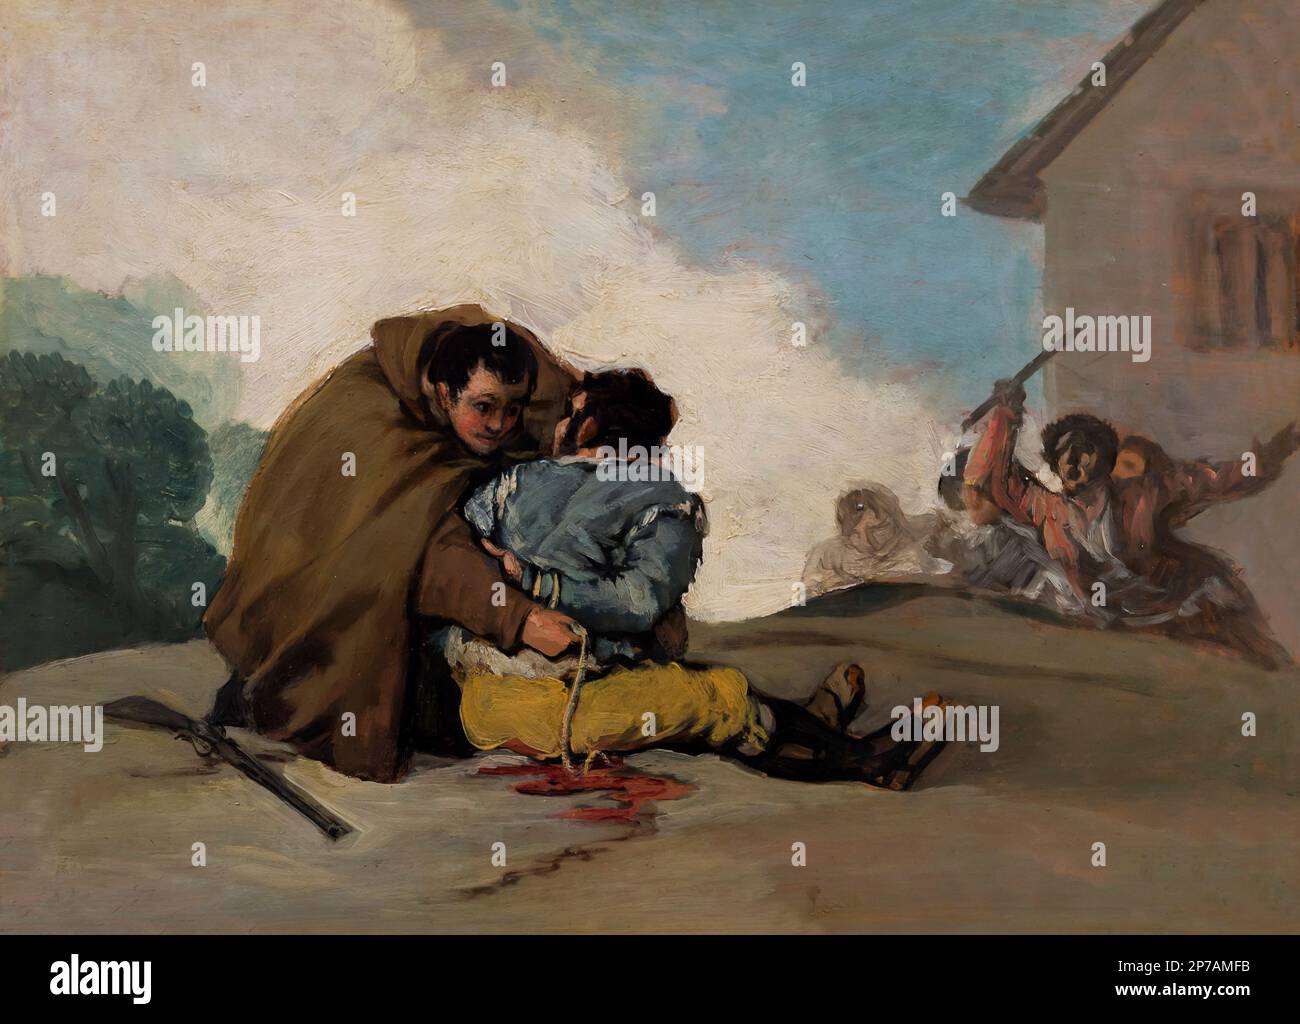 Frate Pedro si lega El Maragato con una corda, Francisco Goya, circa 1806, Art Institute of Chicago, Chicago, Illinois, USA, America del nord, Foto Stock